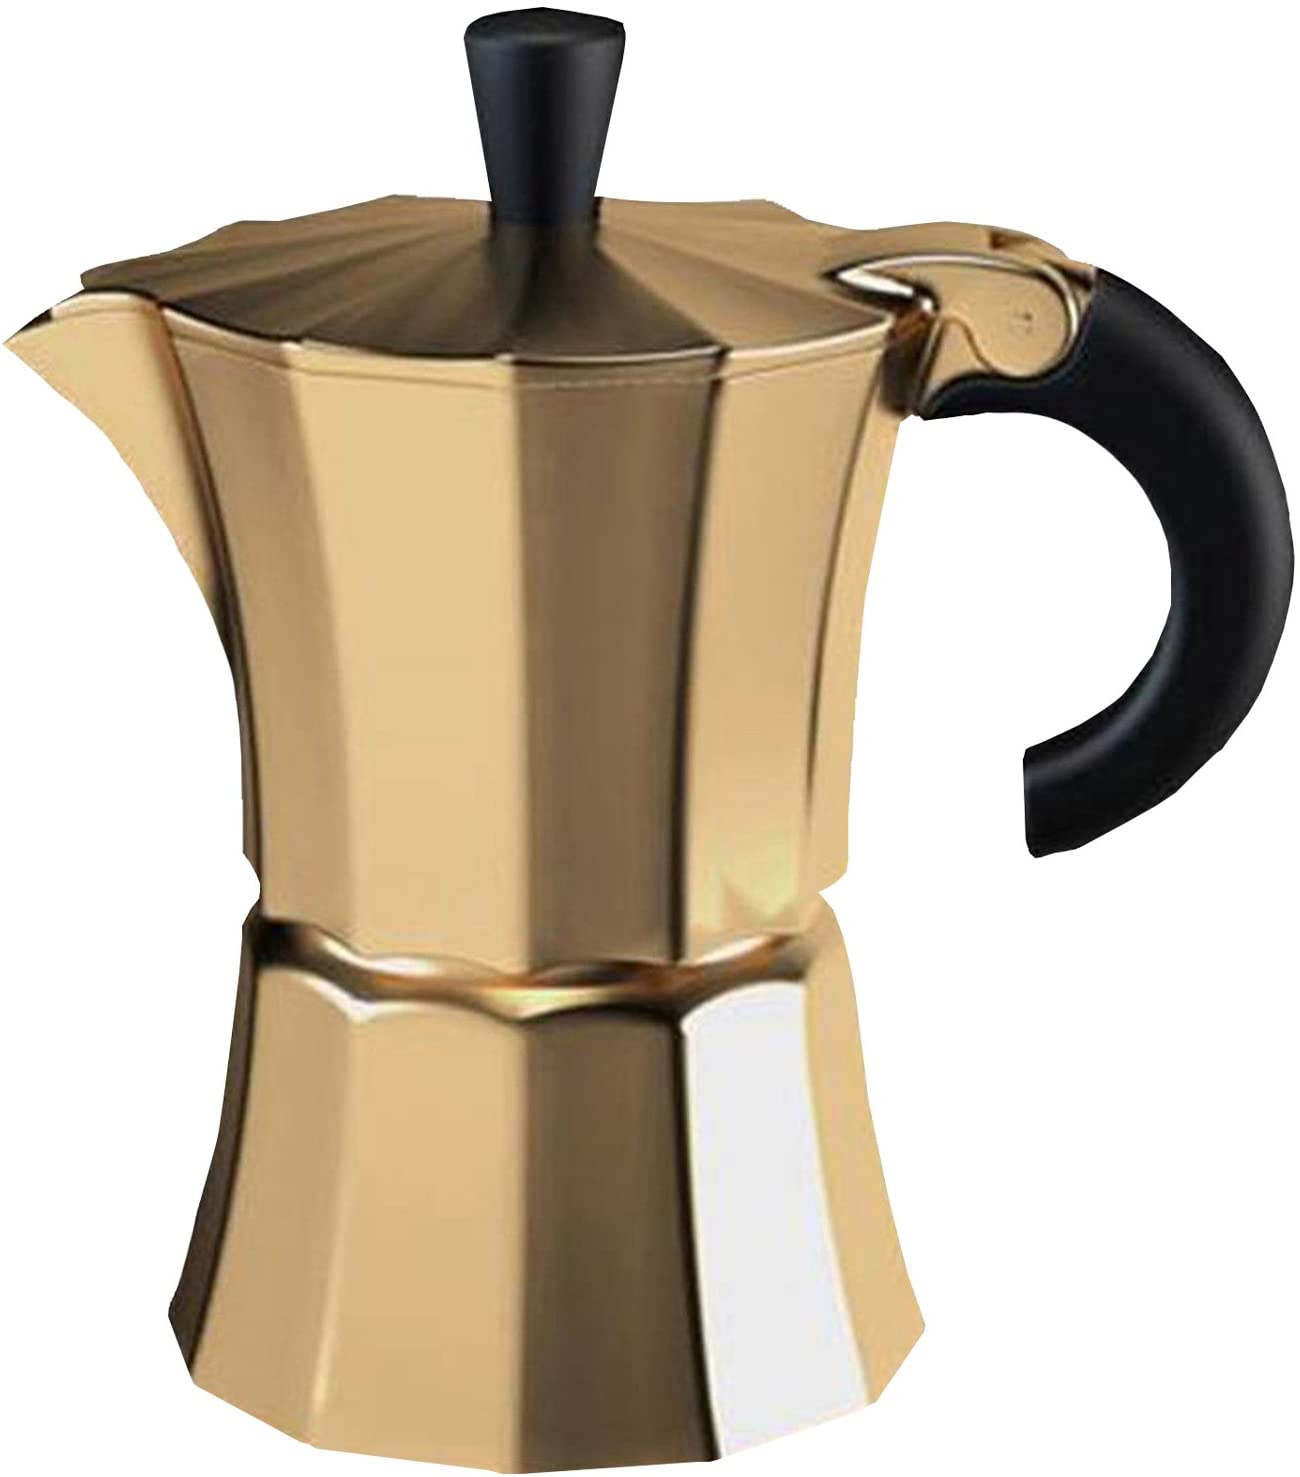 Gnali & Zani MOR003/GOLD Morosina Coffee Maker 6 Cups Gold Aluminium Plastic